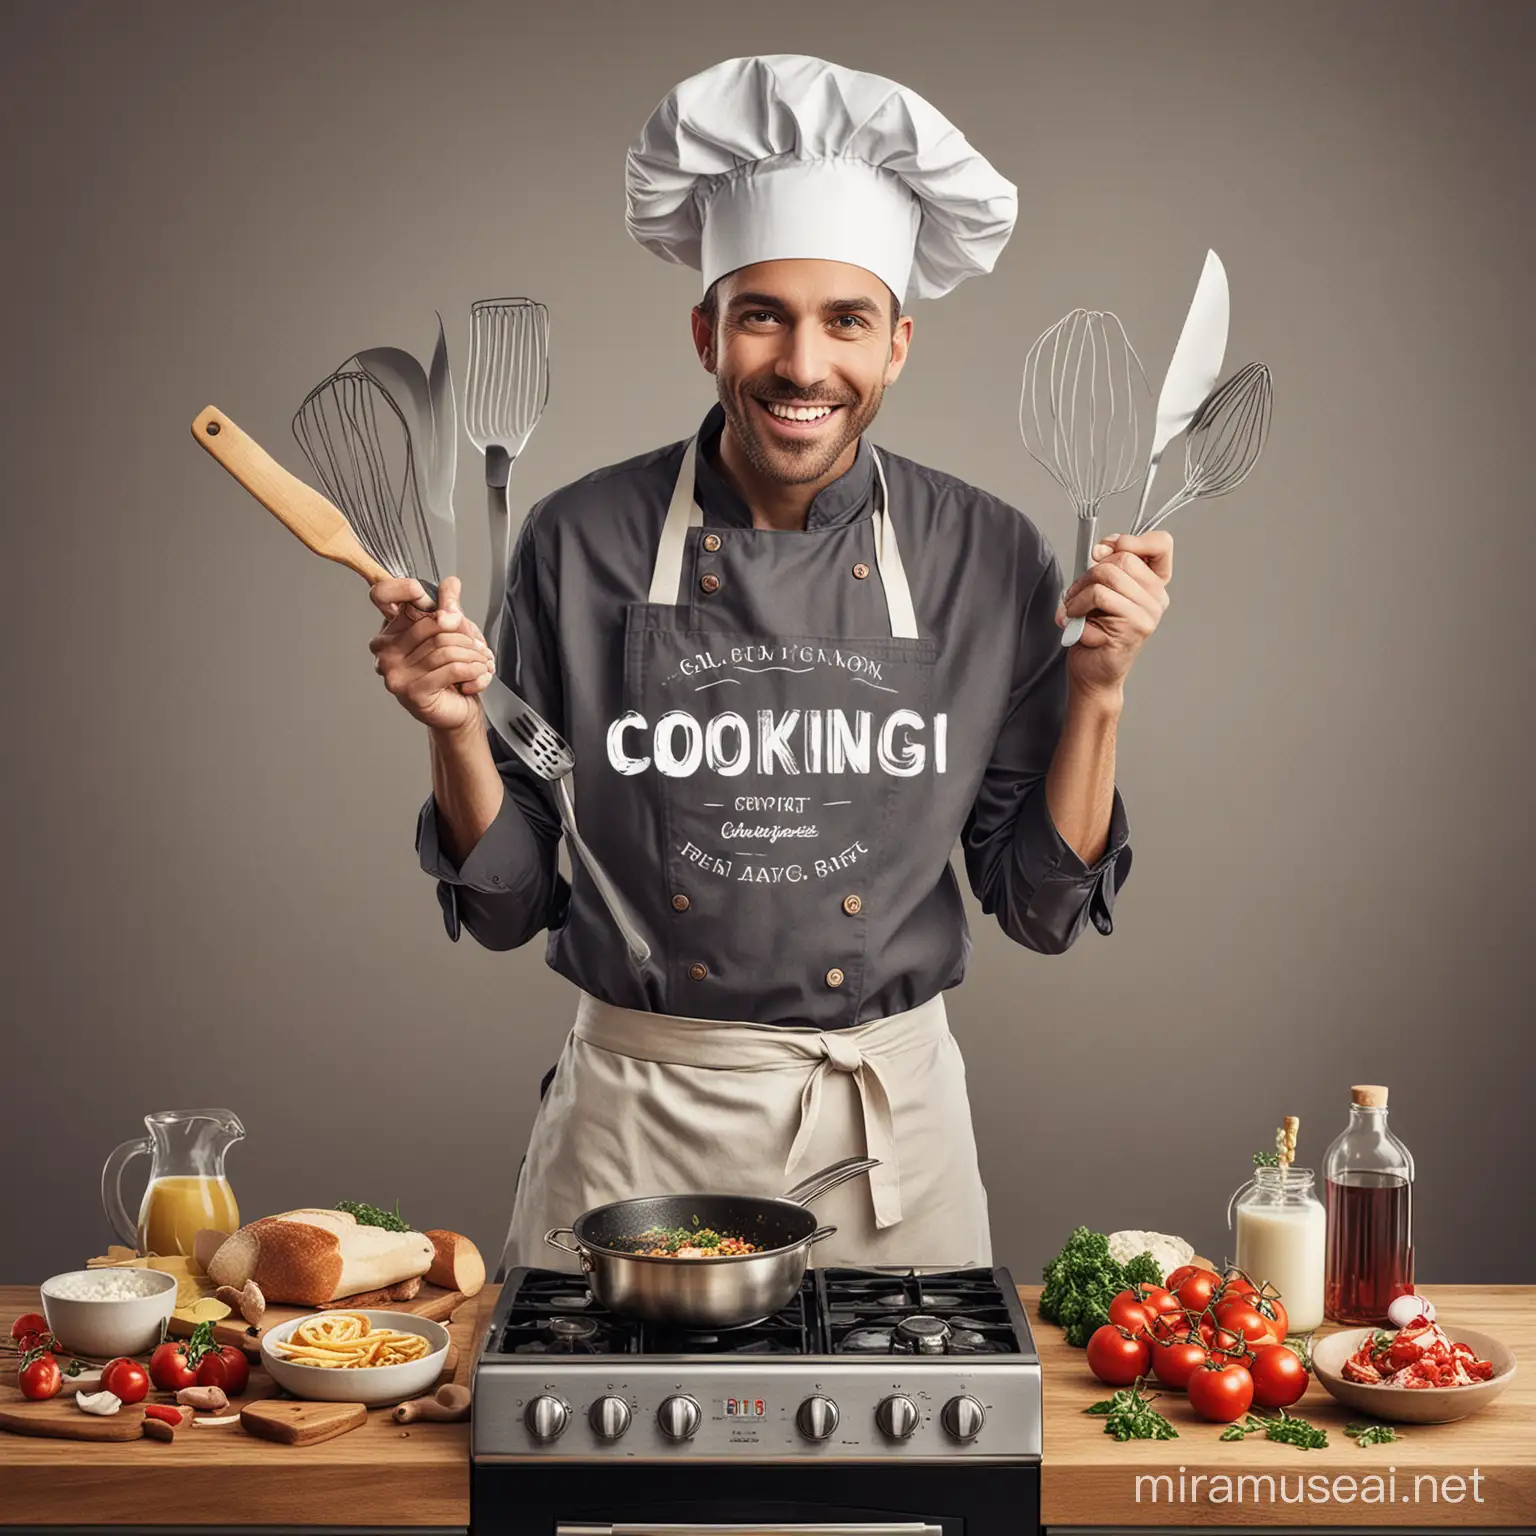 imagen promocional con tematica de cocina